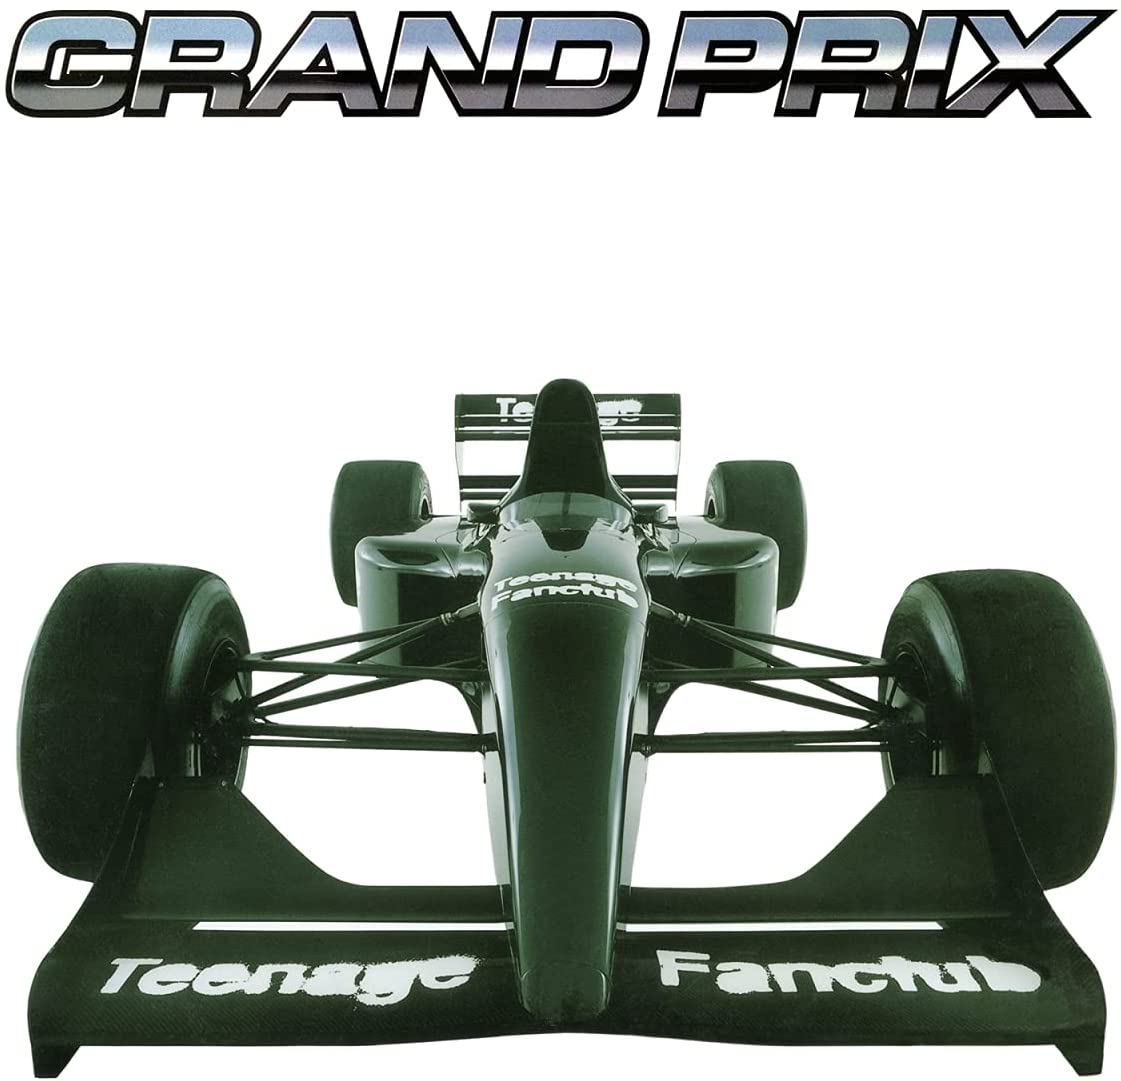 Teenage Fanclub – Grand Prix